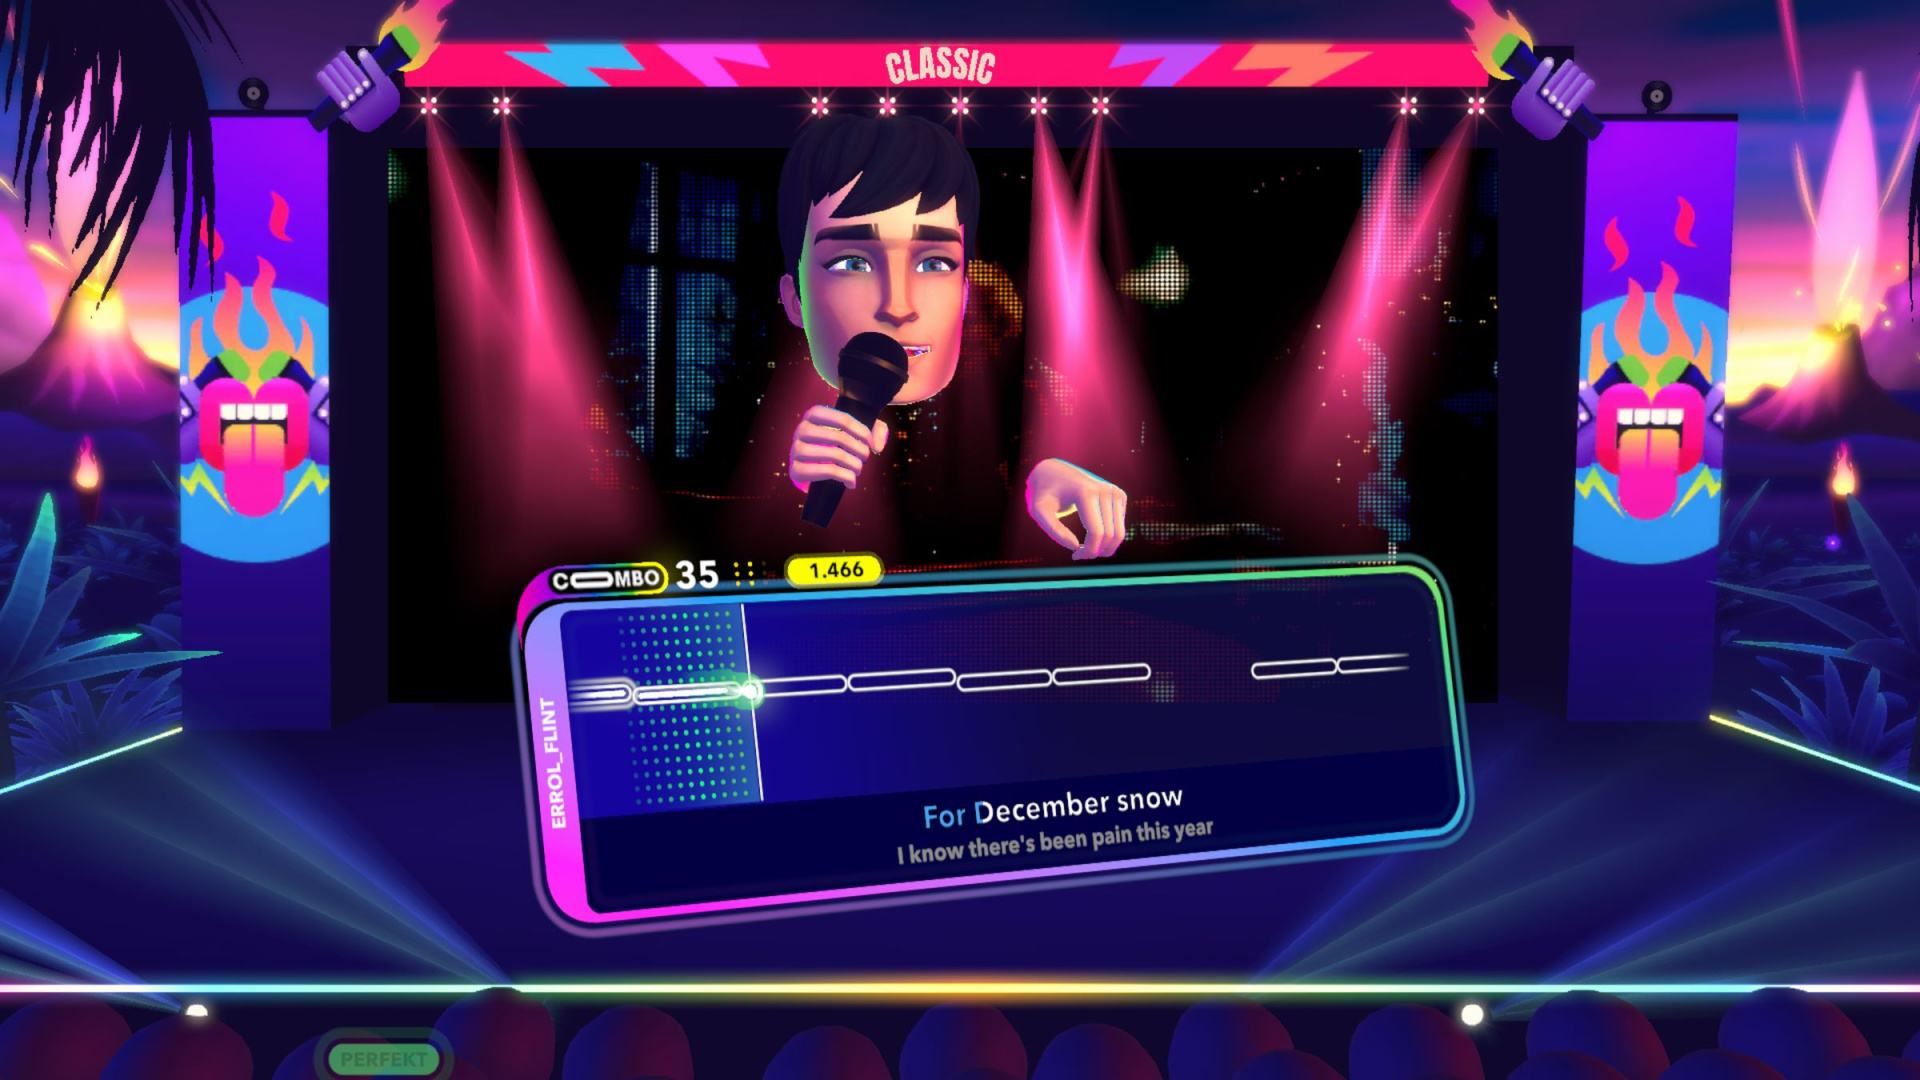 Spiele-Check: Let's Sing 2024 – Mehr als nur neue Lieder - News